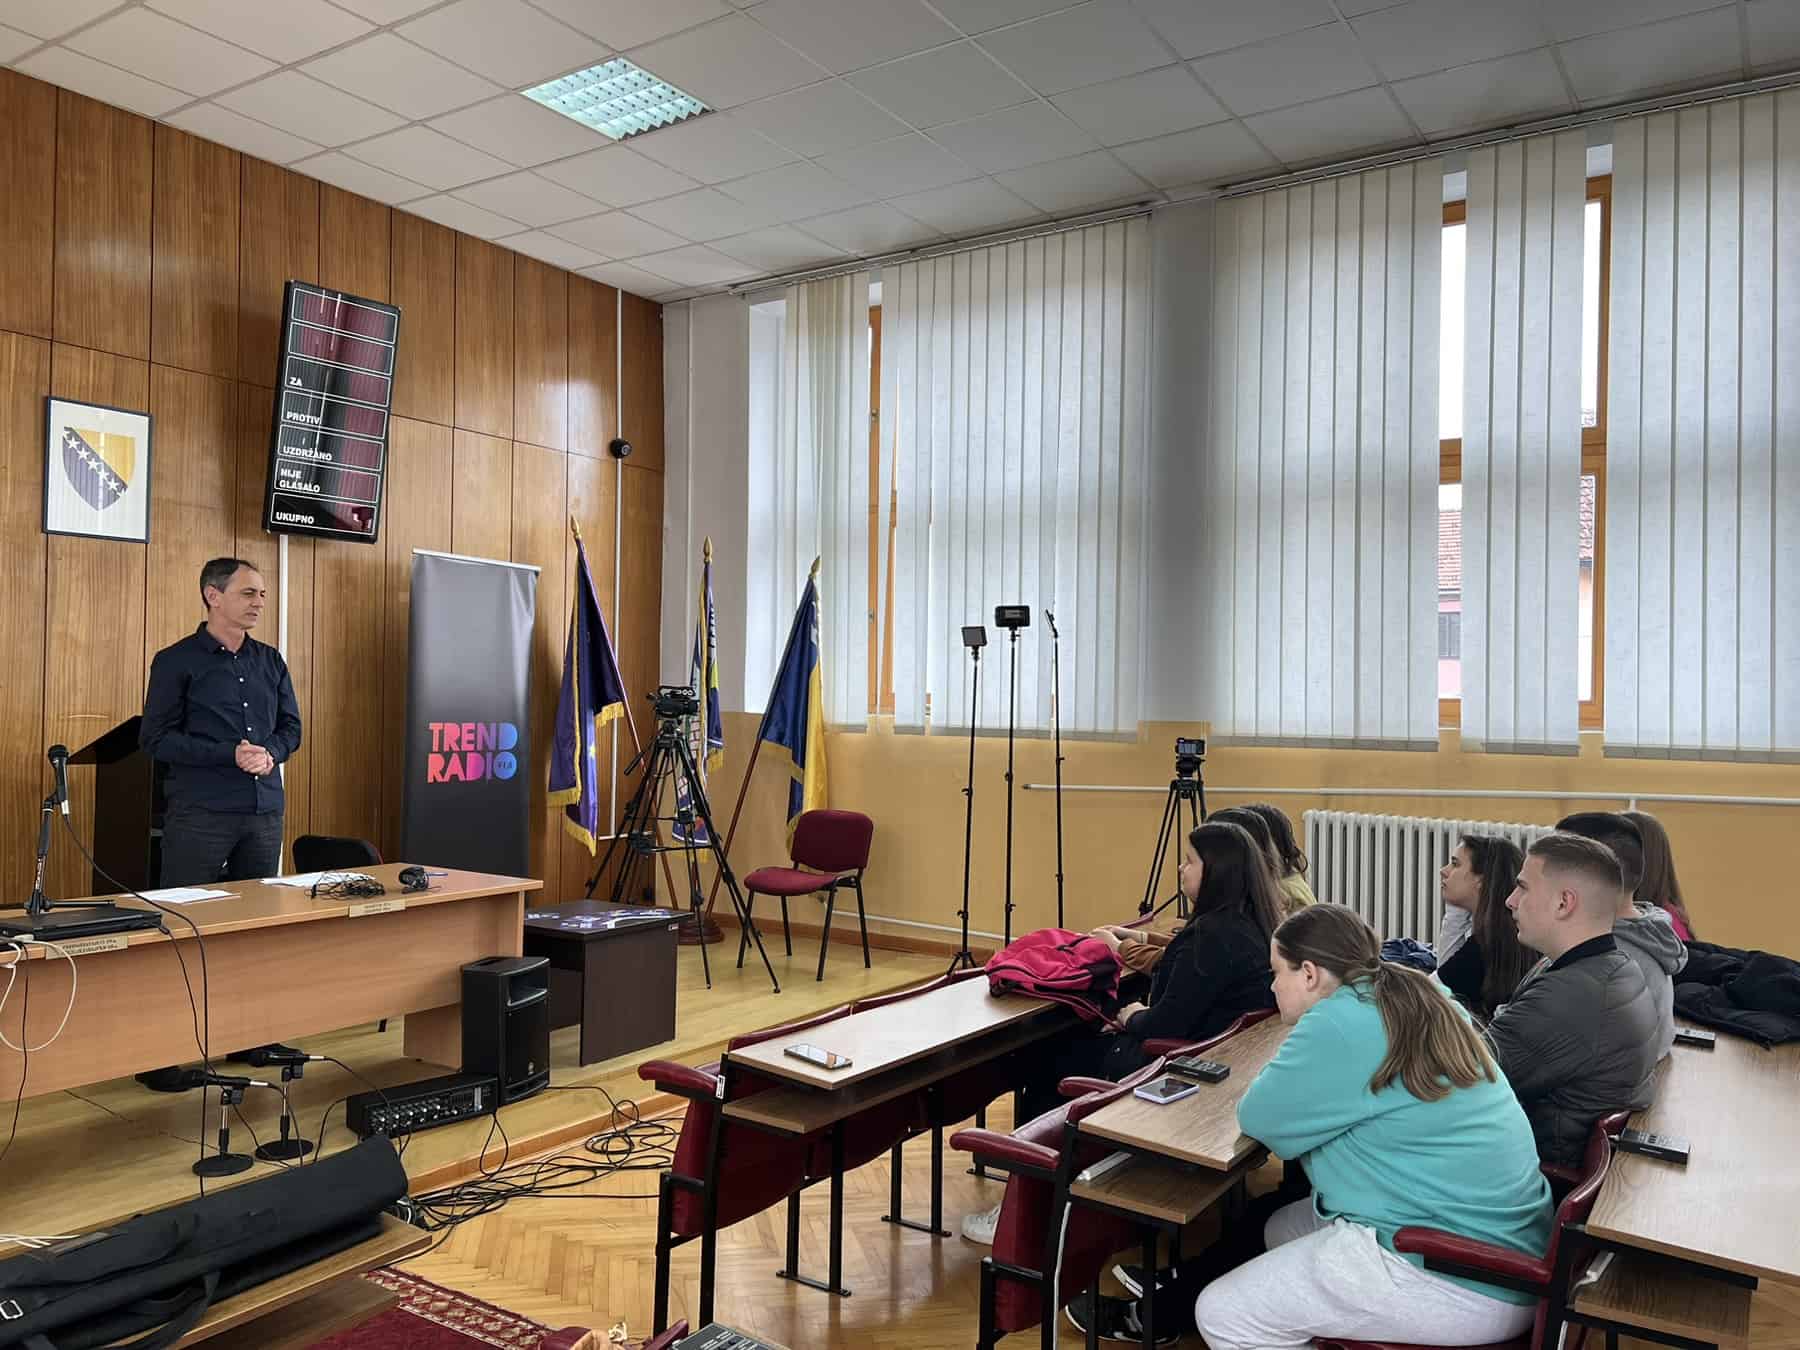 Trend radio organizirao medijsku radionicu sa mladima iz Bosanskog Petrovca